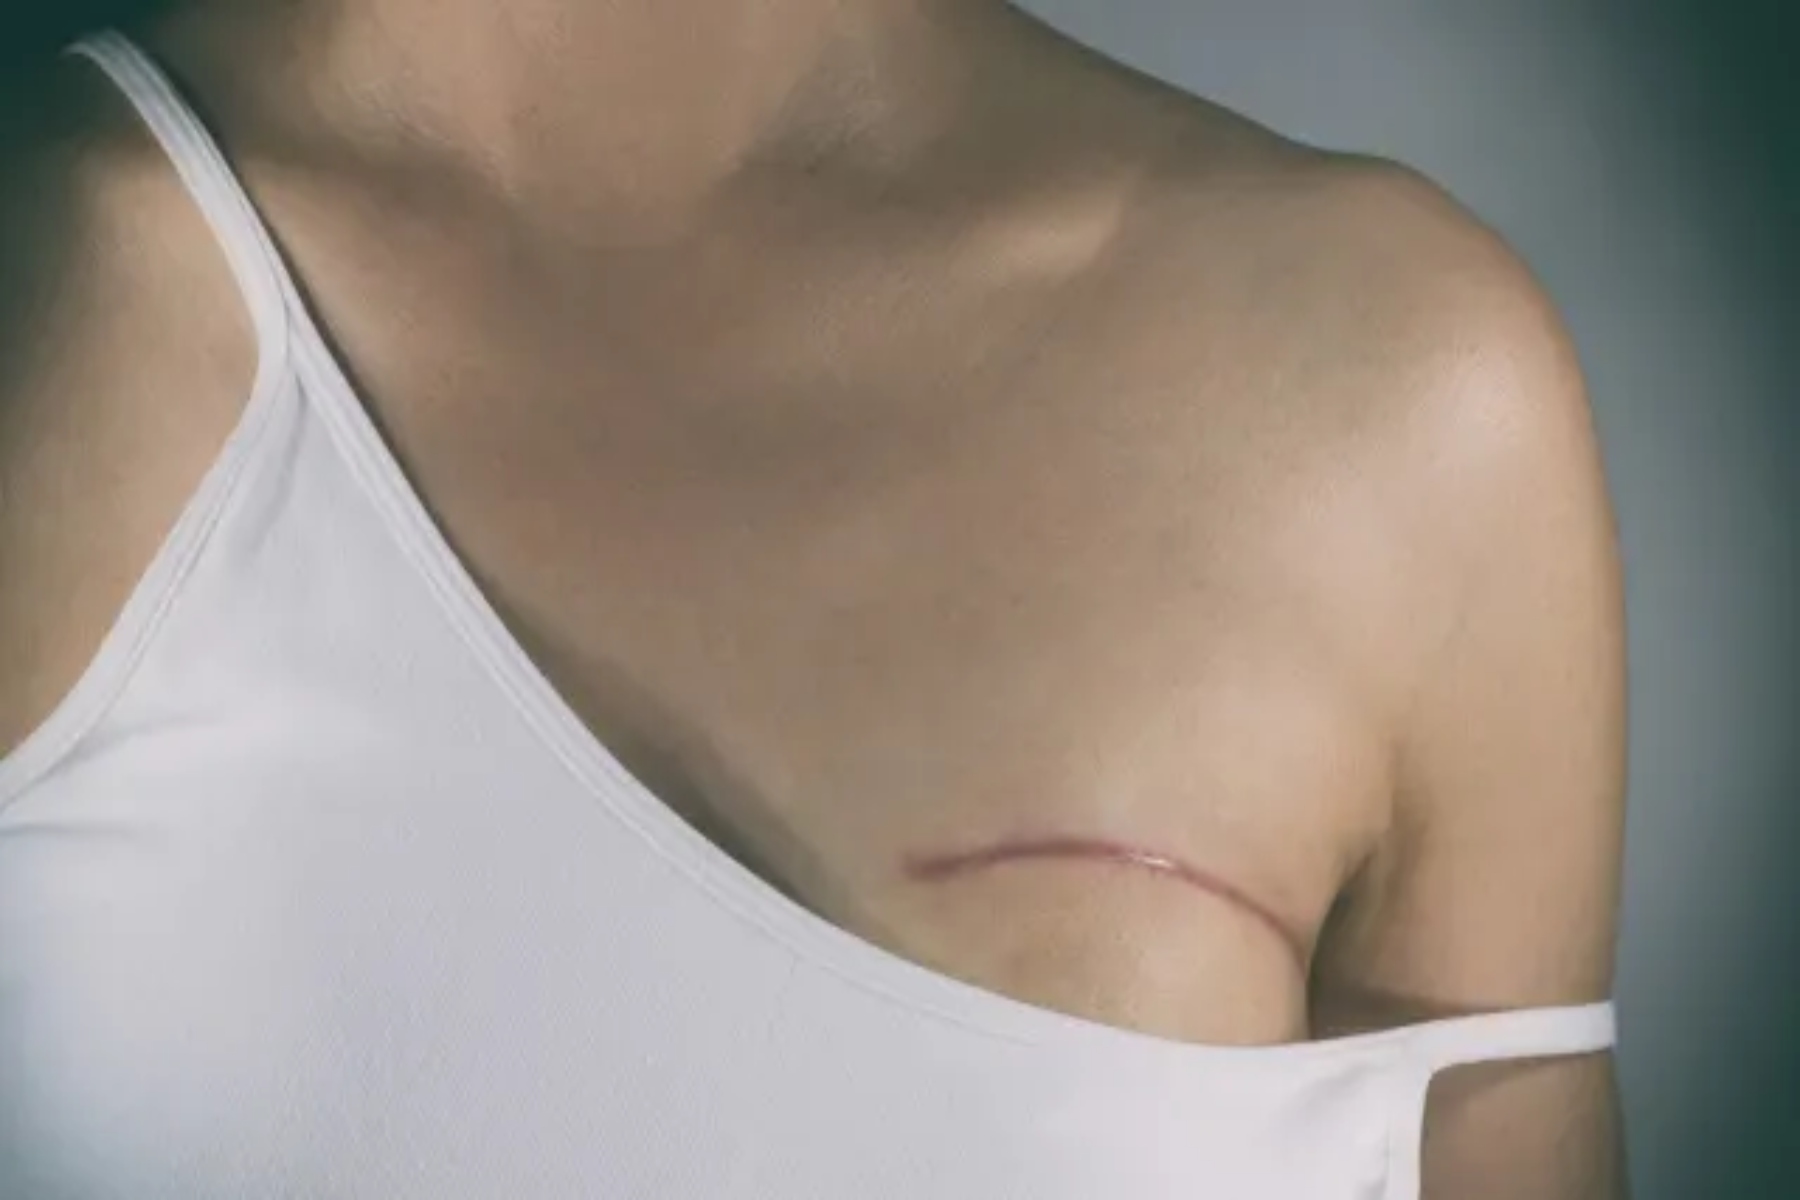 Σεξ μαστεκτομή: Πώς η μαστεκτομή & η αποκατάσταση των μαστών επηρεάζουν την σεξουαλική μας ζωή